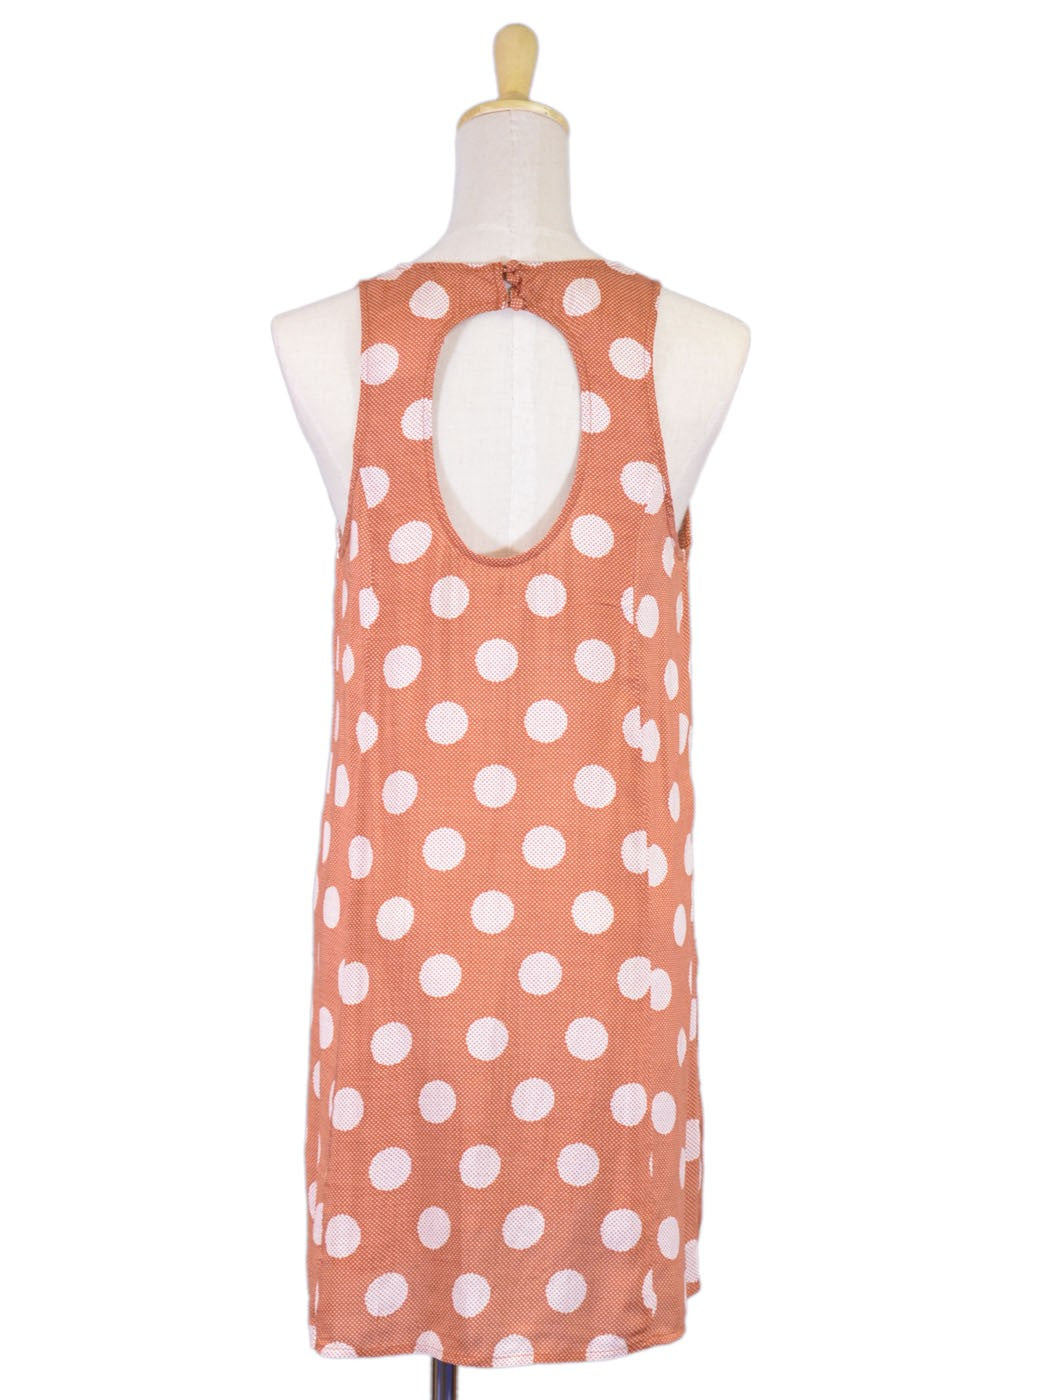 En Creme Vintage Inspired Polka Dot Print Two Pocket Cutout Back Woven Dress